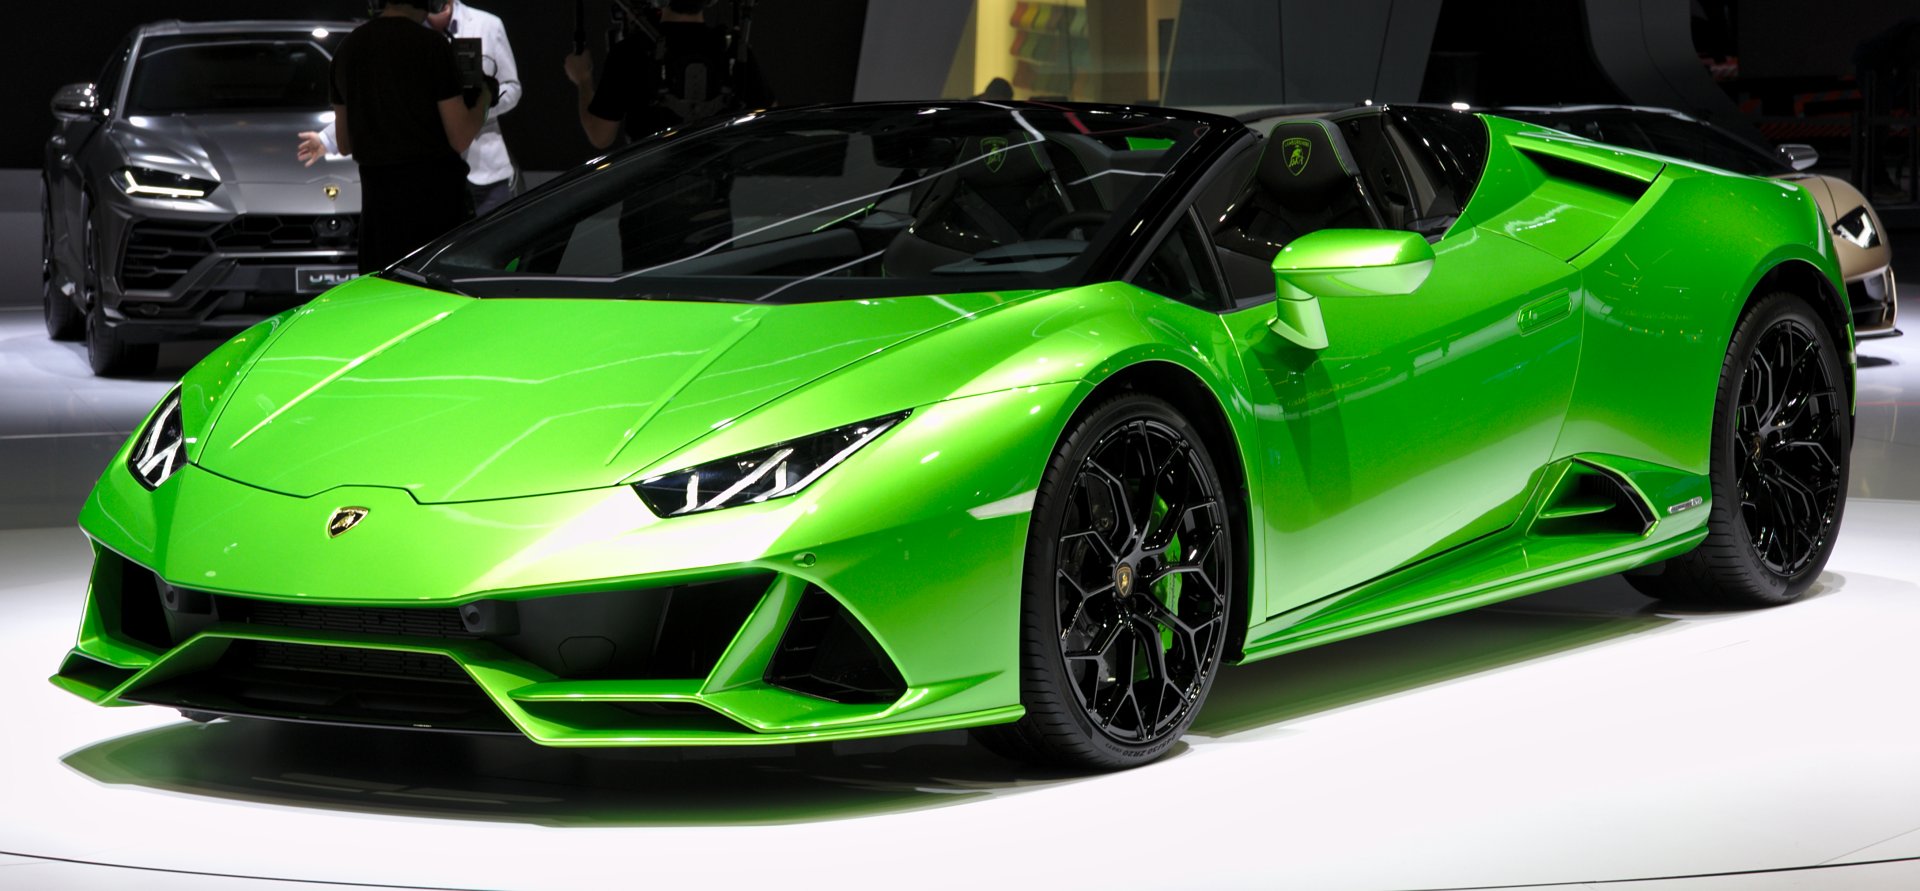 Lamborghini_Huracan_Evo_Spyder_Genf_2019_1Y7A5556.jpg